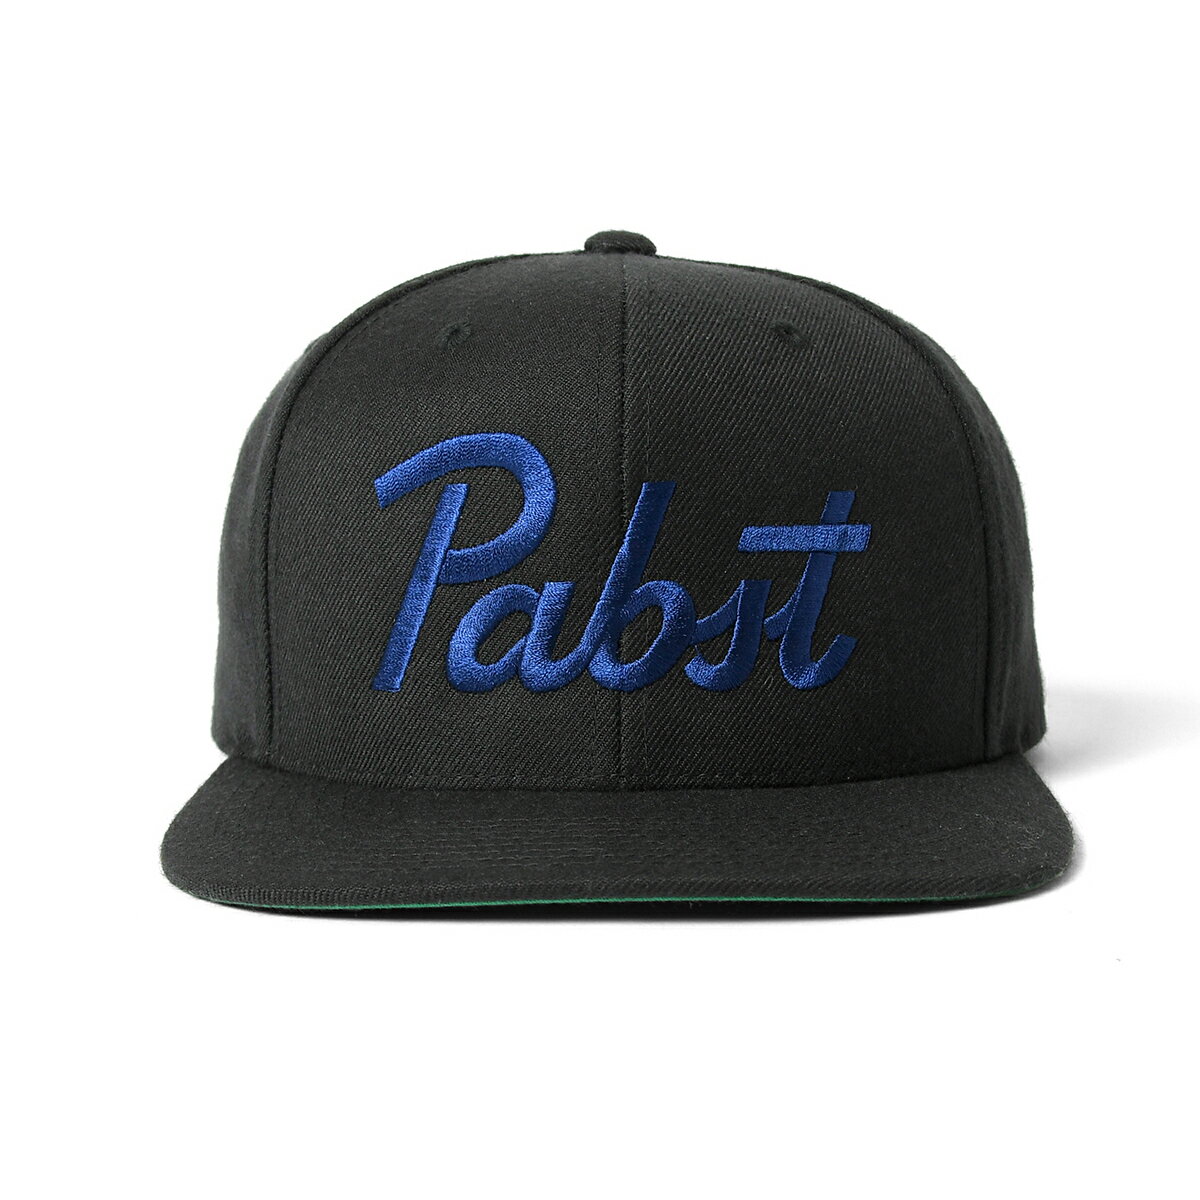 楽天Lafayette （ラファイエット）PABST BLUE RIBBON パブストブルーリボン ビール ロゴ スナップバックキャップ 帽子 メンズ 公式 オフィシャルグッズ ストリート カジュアル ブランド PABST LOGO SNAPBACK BLACK ブラック 黒色